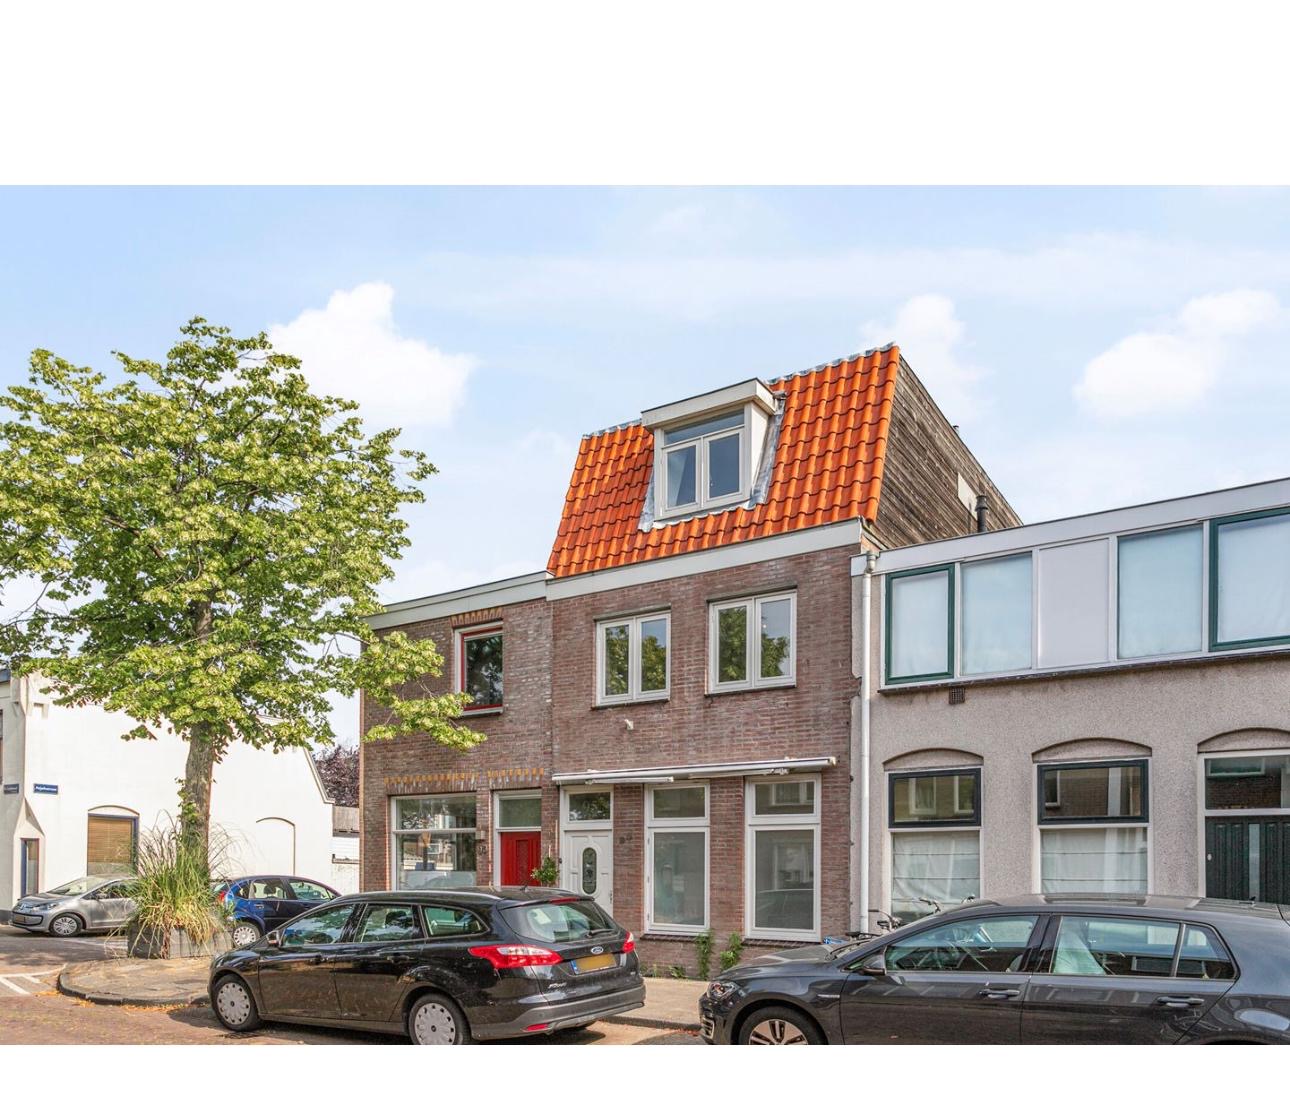 Dom jednorodzinny w Haarlemie